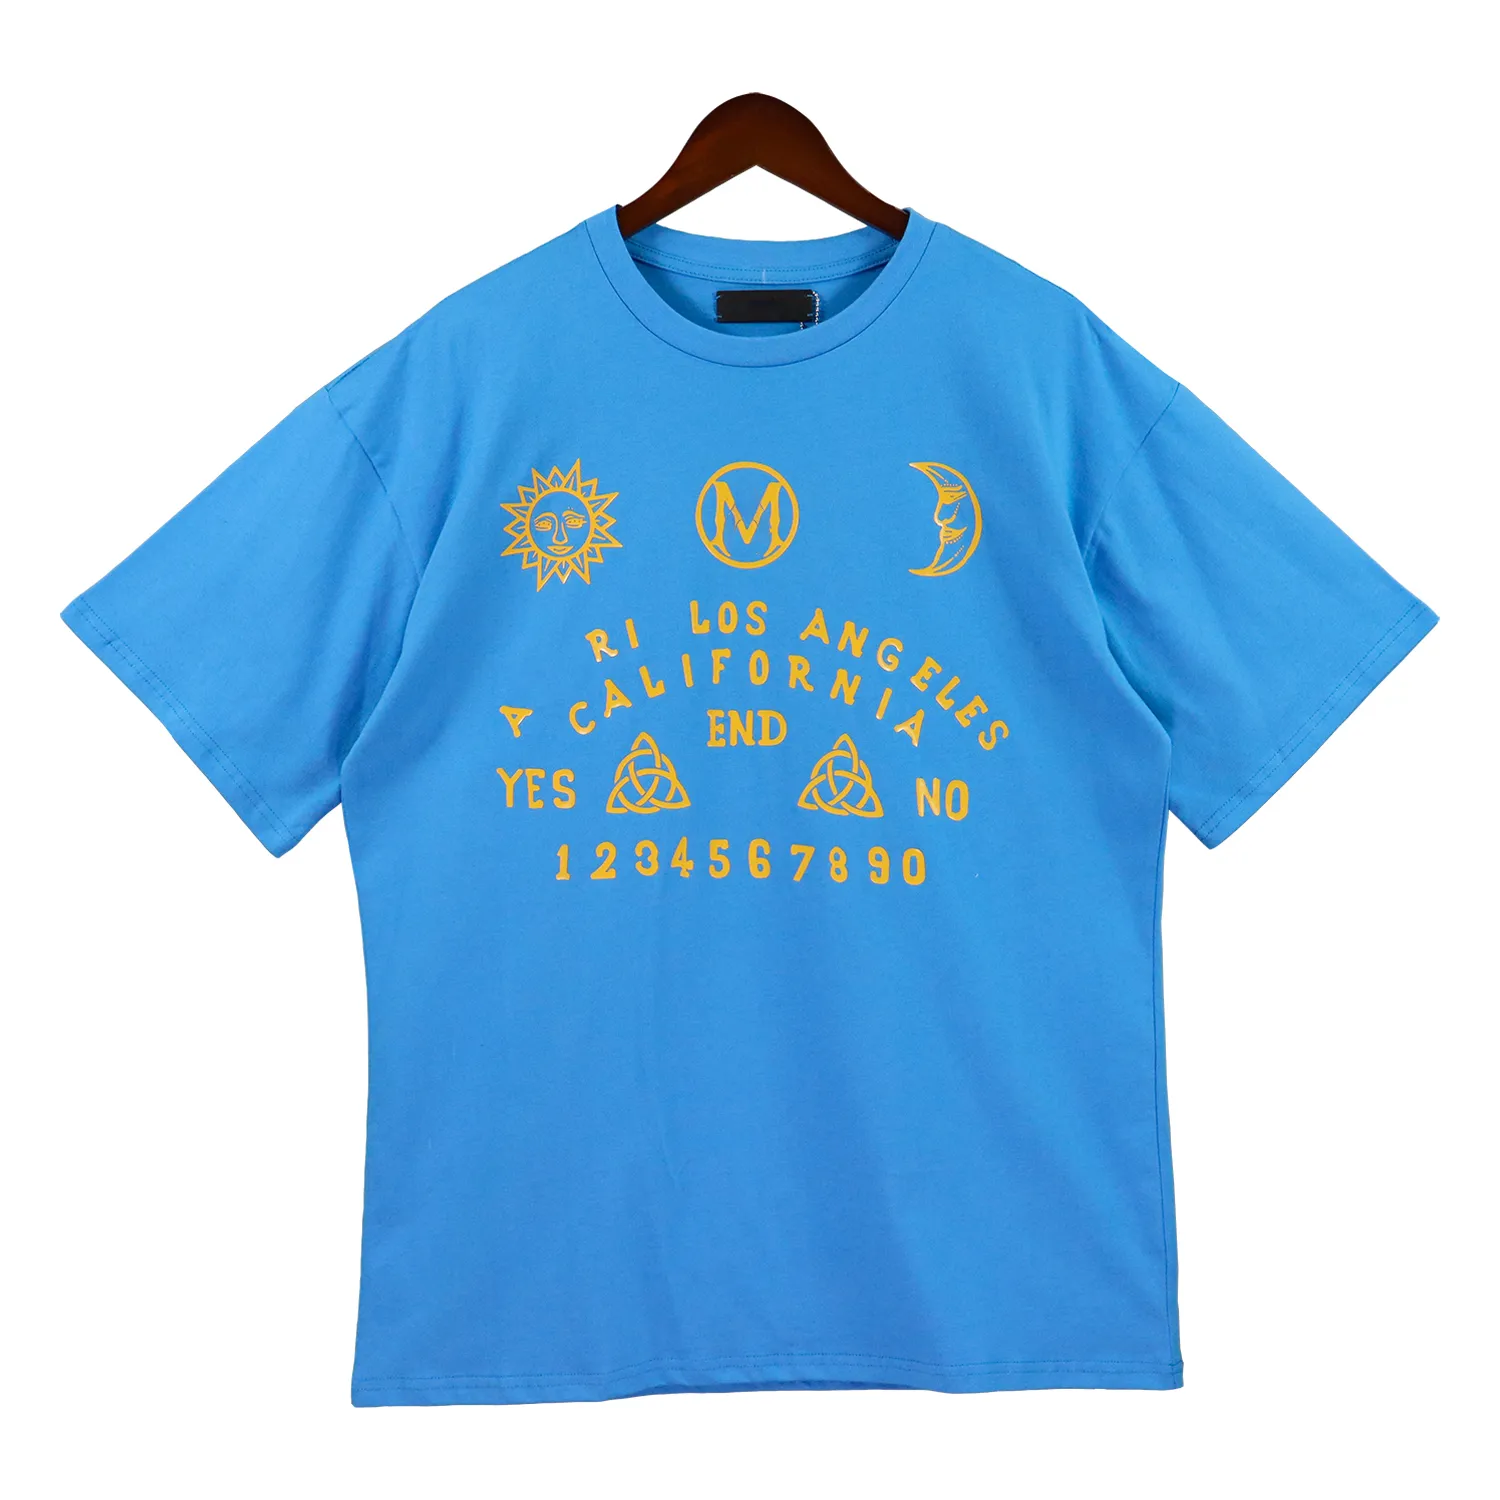 Designer Tees Mens Summer Shirt Womens Simpson magliette per uomo vestiti vr46 camicia stampato a maniche corte a manica corta uomo sciolto casual ghirpat sportshirts round collo jxm5